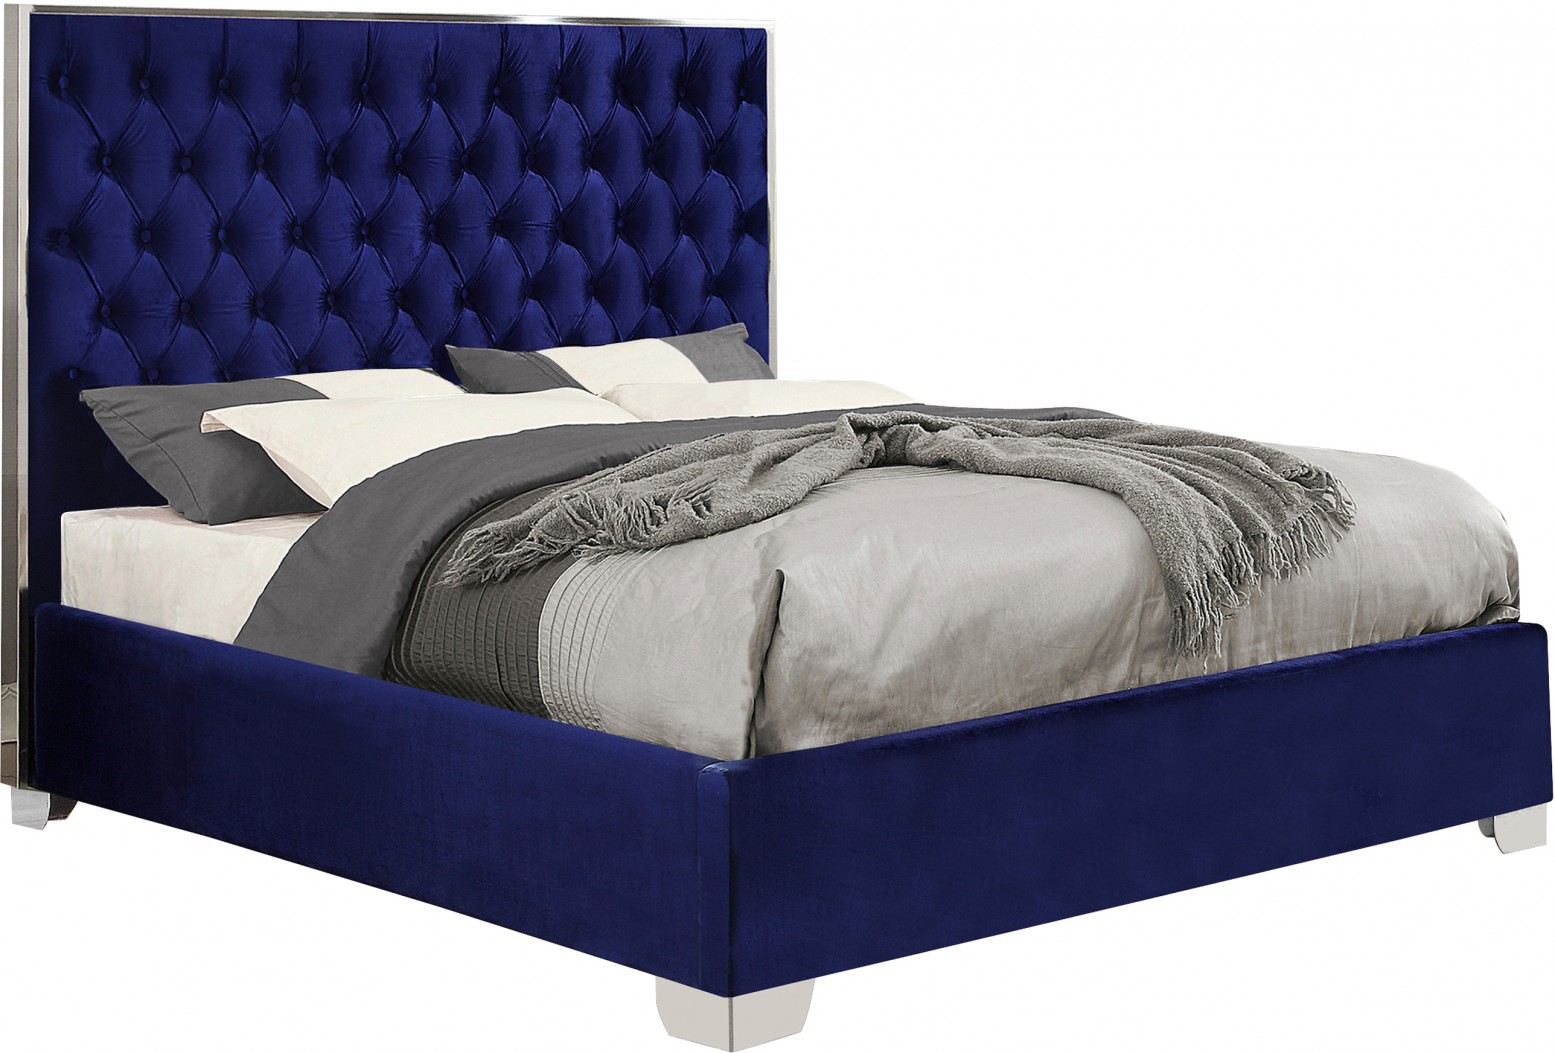 Lexi Velvet King Size Bed, Navy Buy Online at Best Price